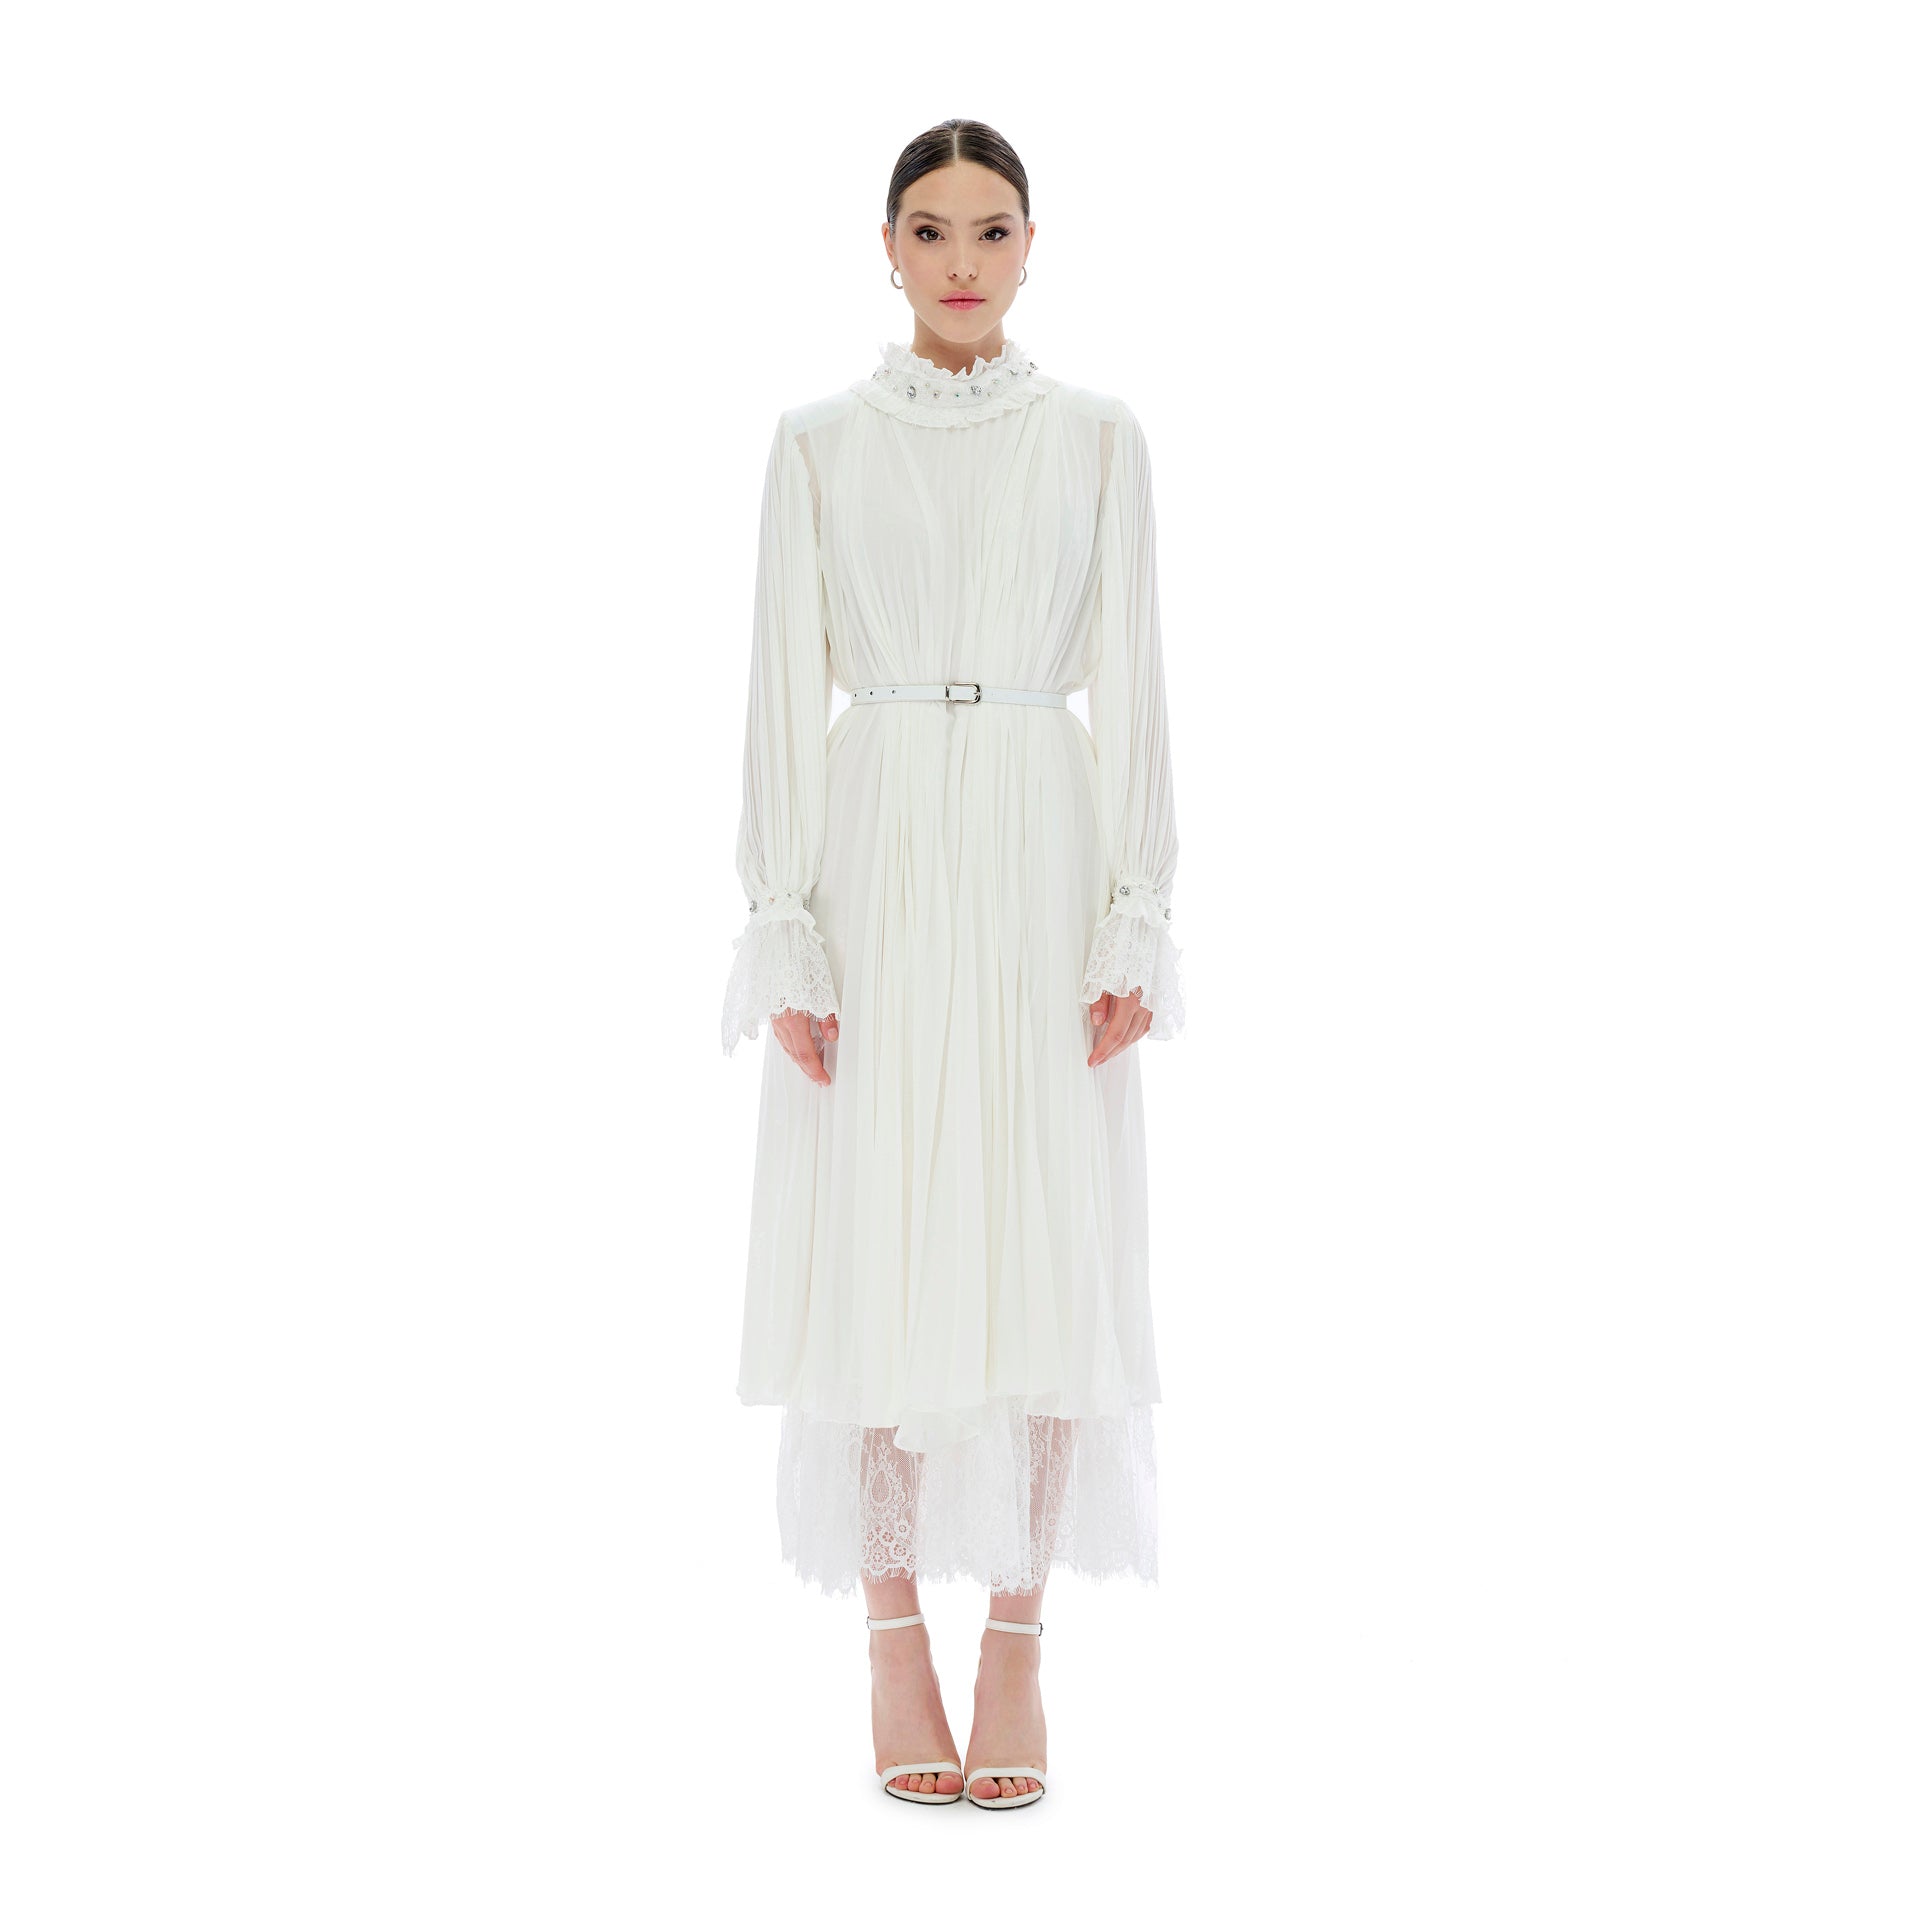 White Chiffon Pleated Dress From Miha